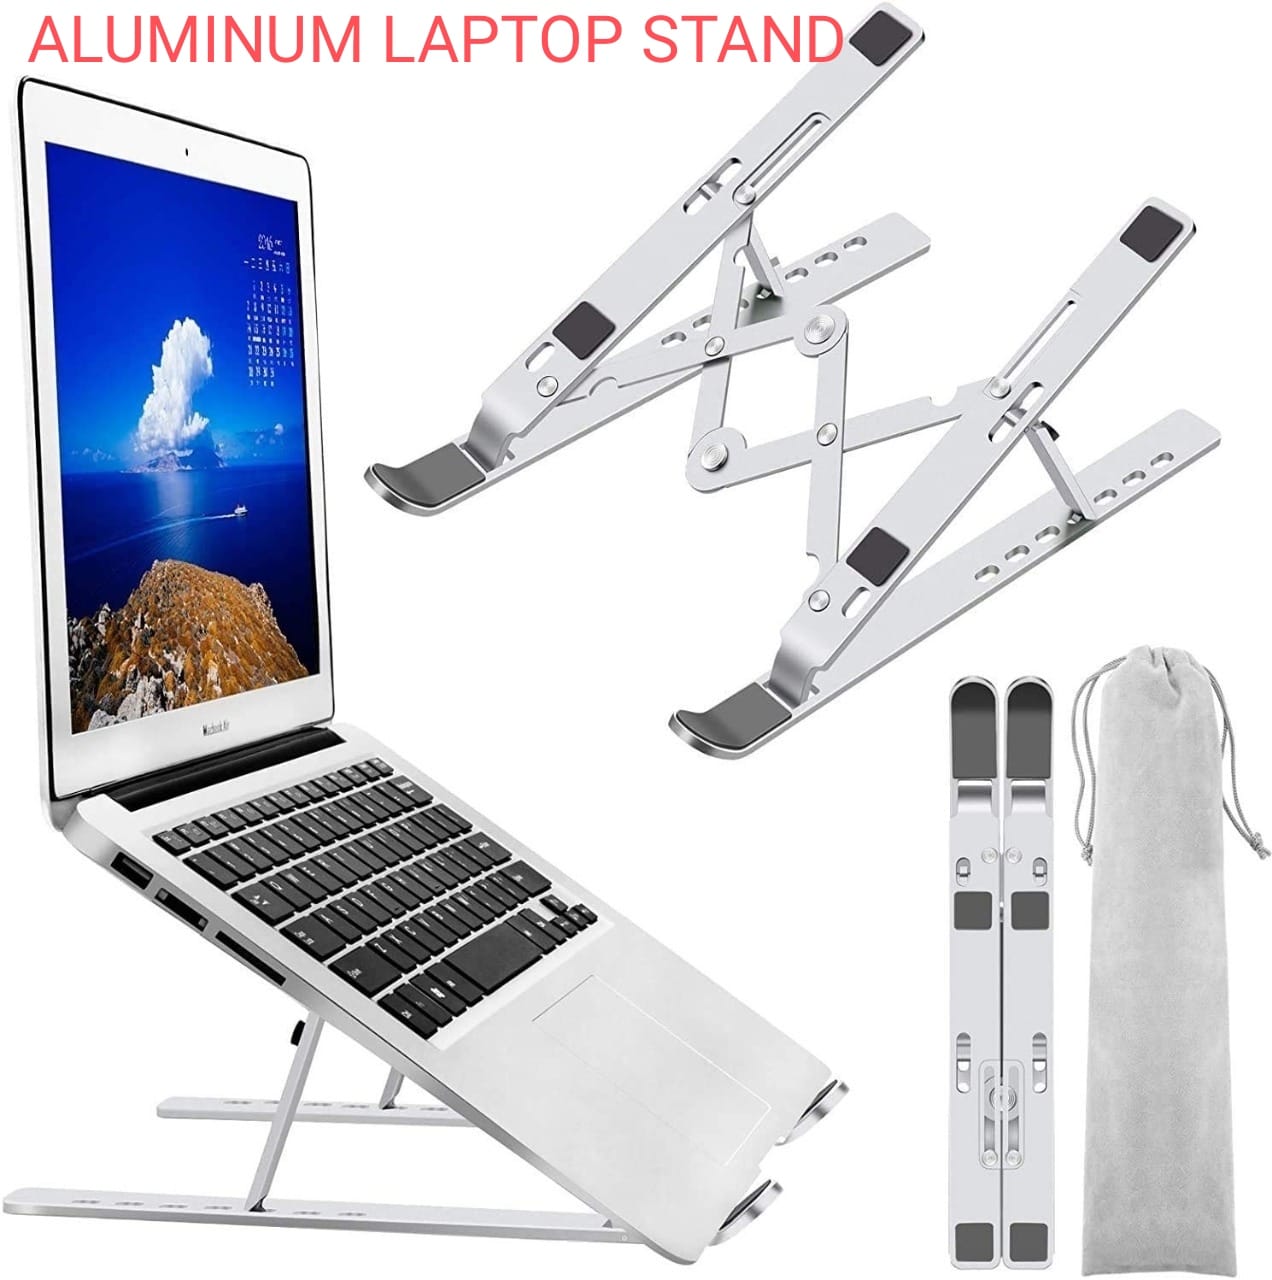 Laptop Aluminum Stand